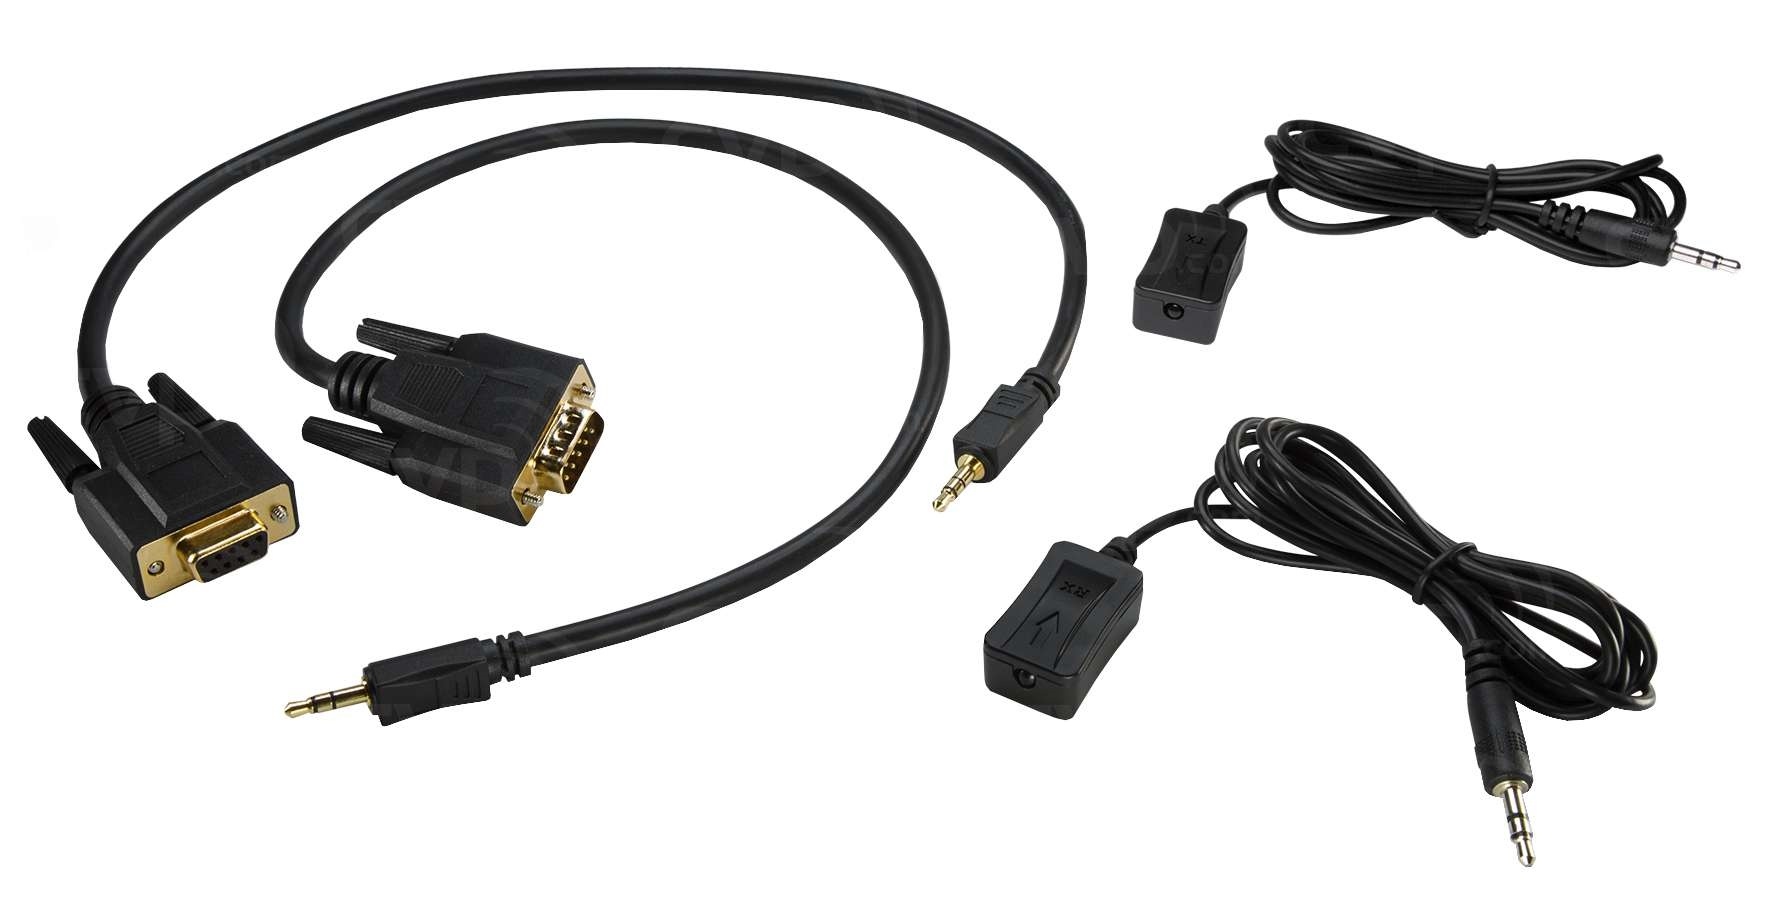 AJA HDBaseT Cable Kit